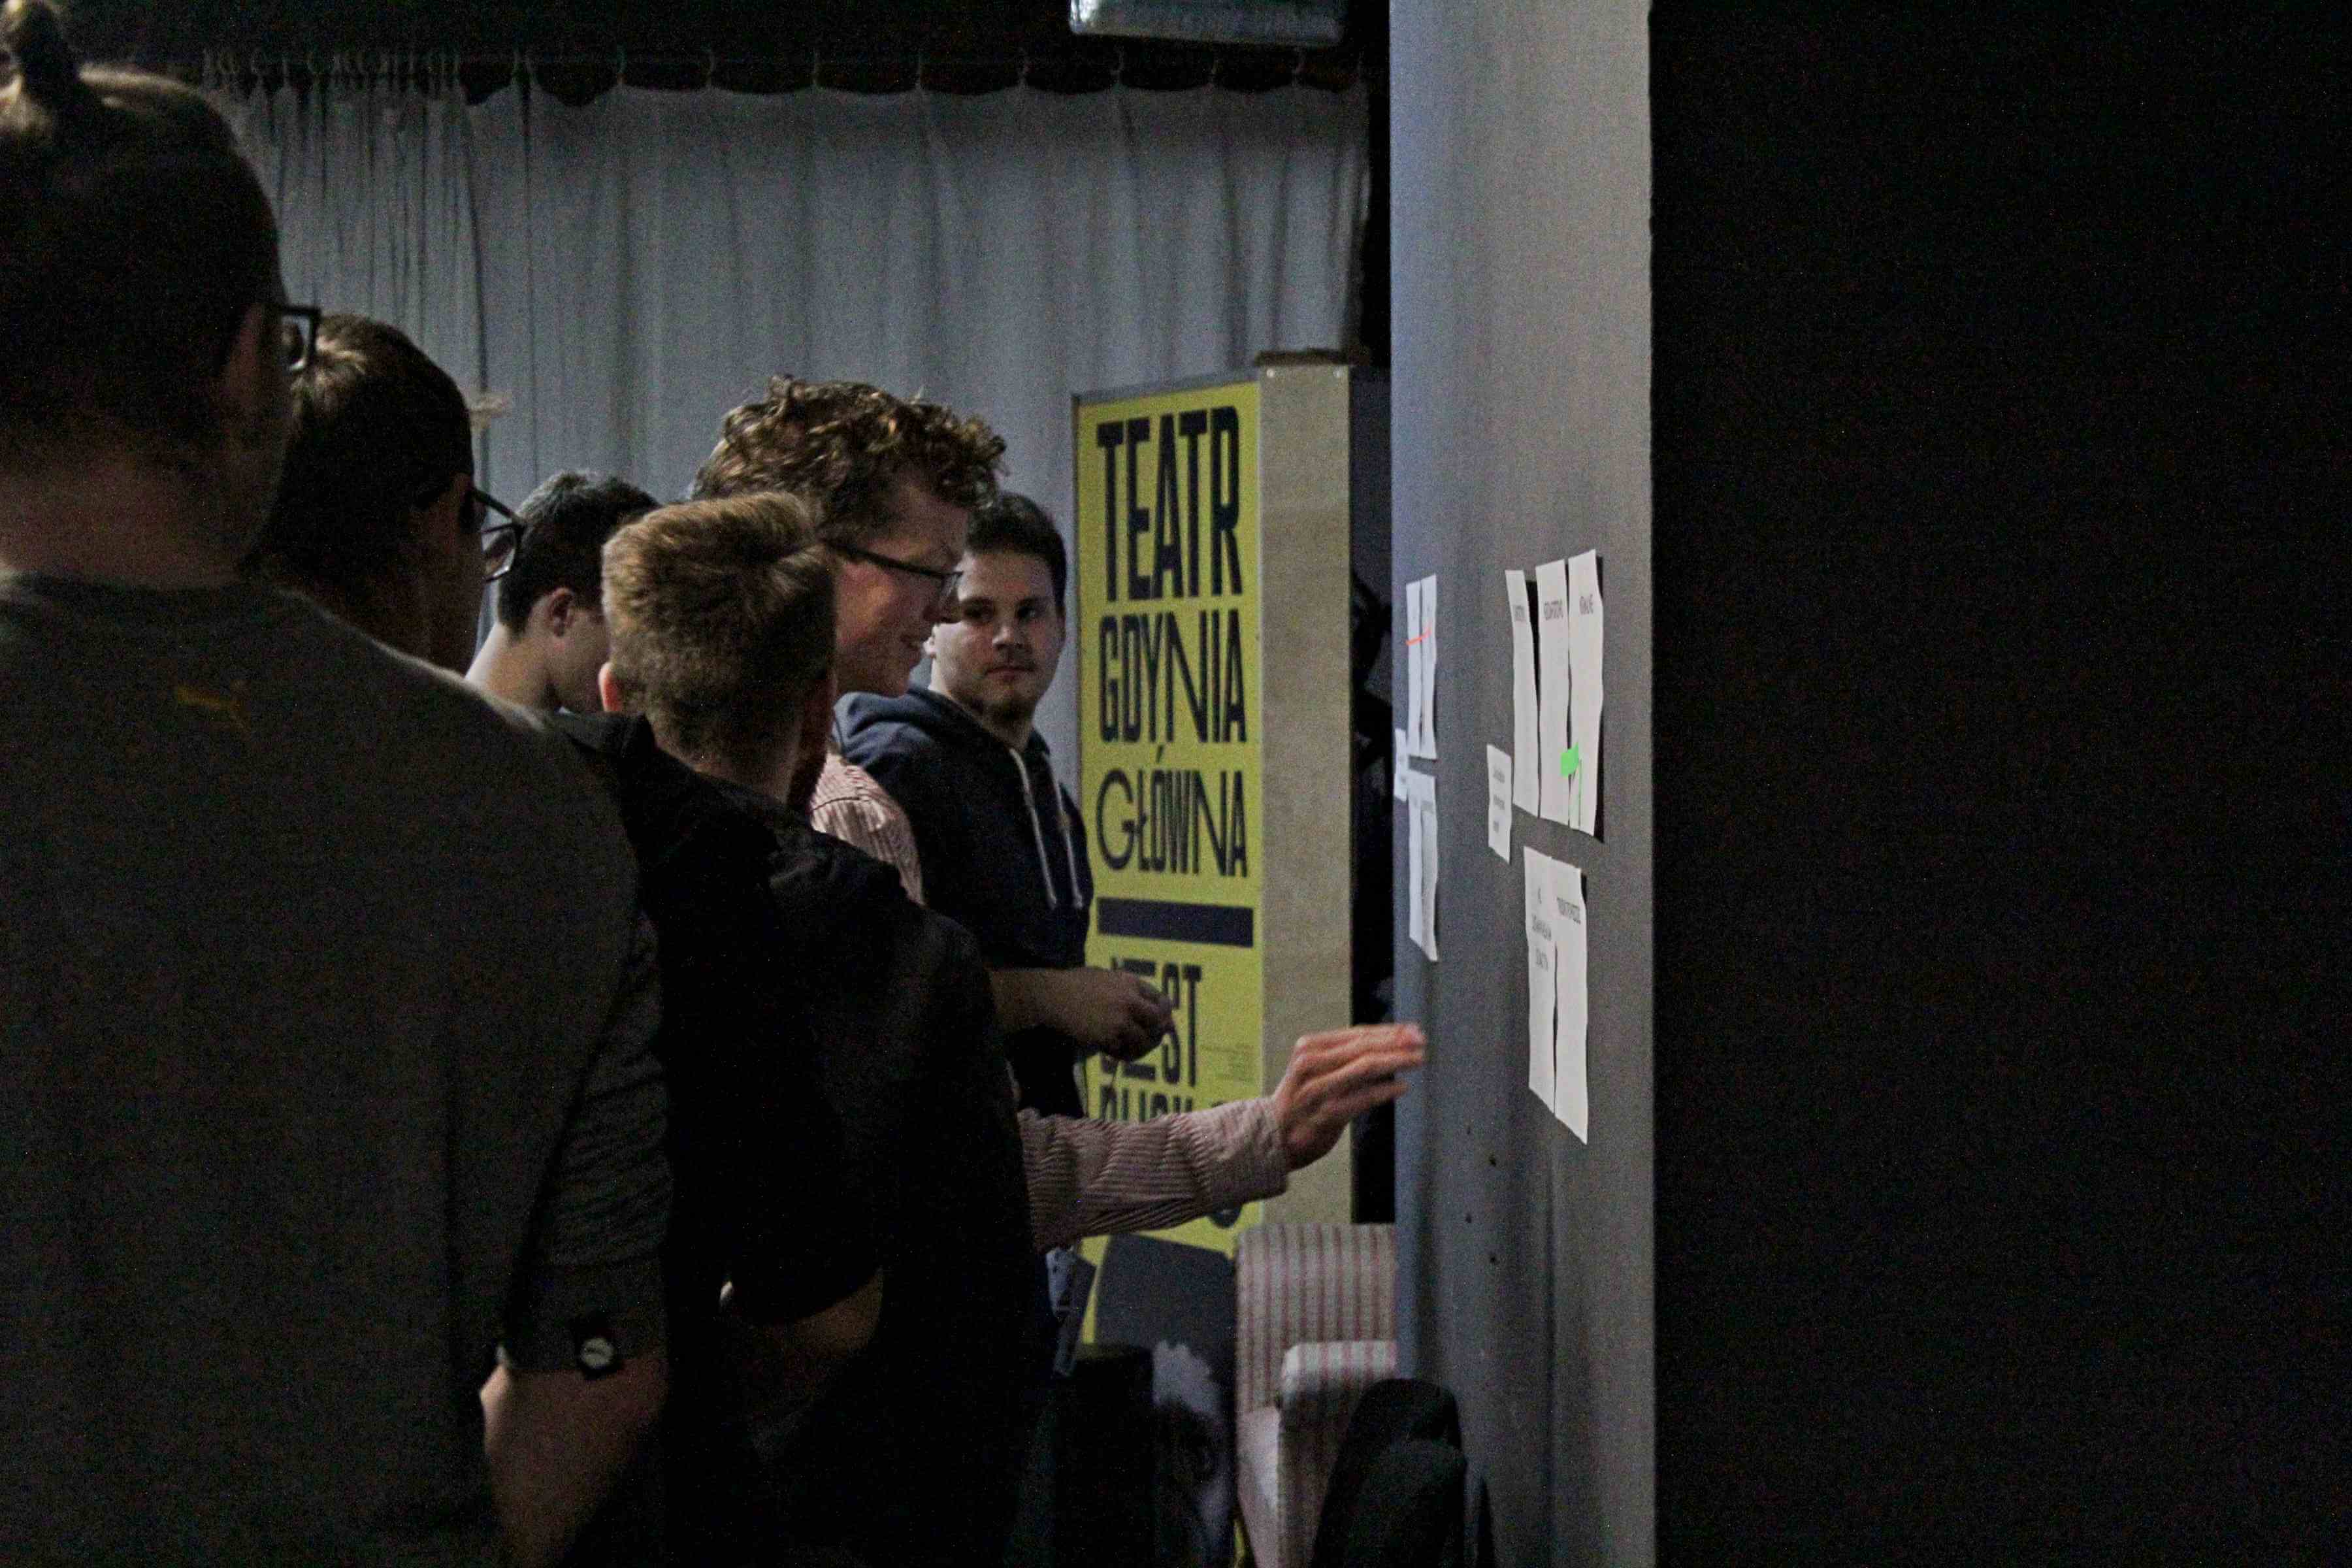 grupa młodych ludzi stojąca przy ścianie, jeden z nich przykleja coś do kartki wiszącej na ścianie, w tle napis teatr gdynia główna